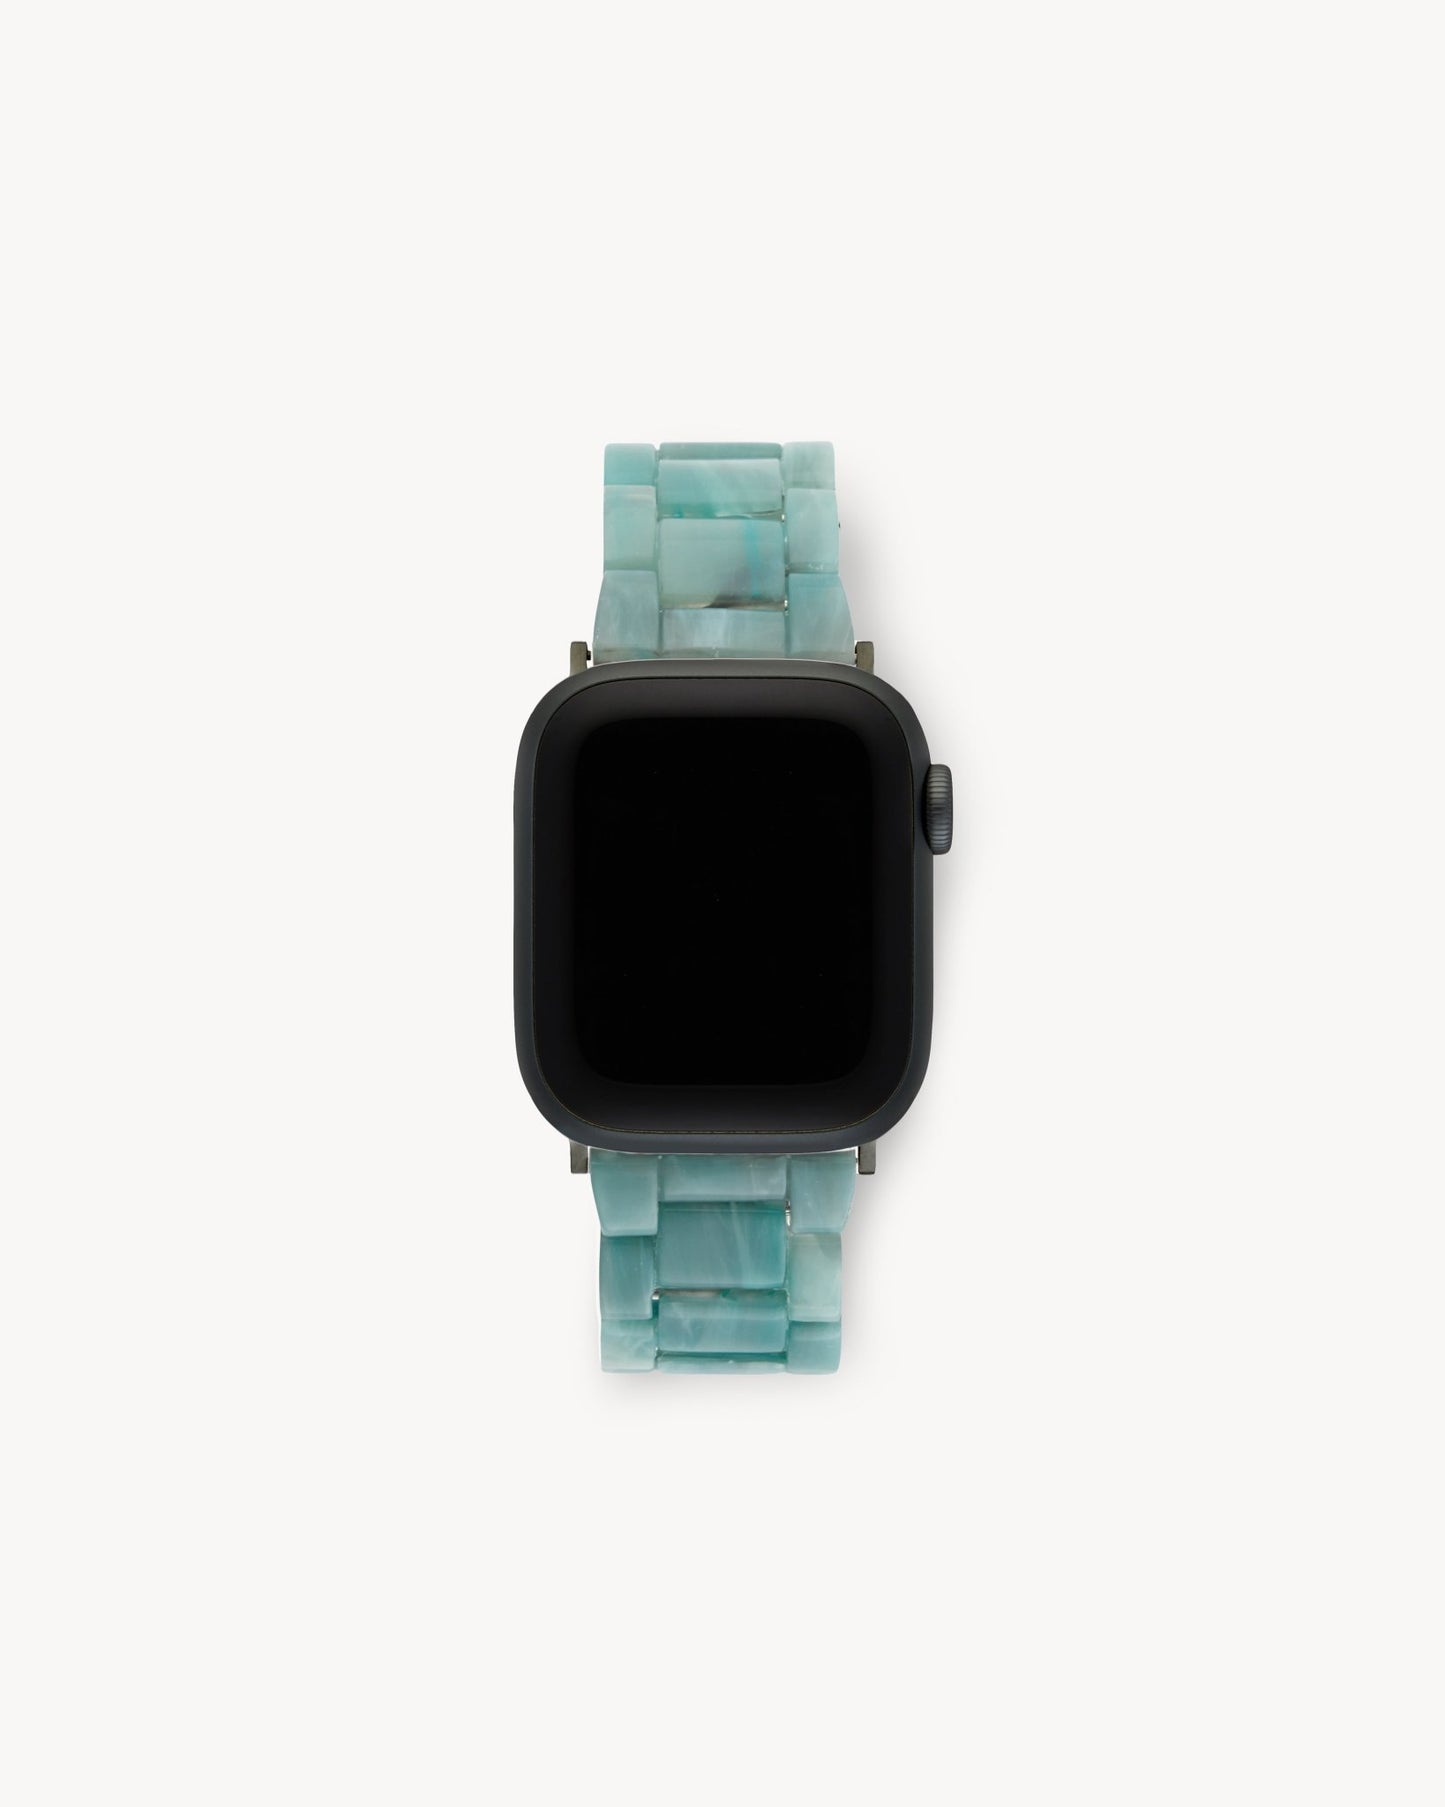 MACHETE Deluxe Apple Watch Band Set in Jadeite